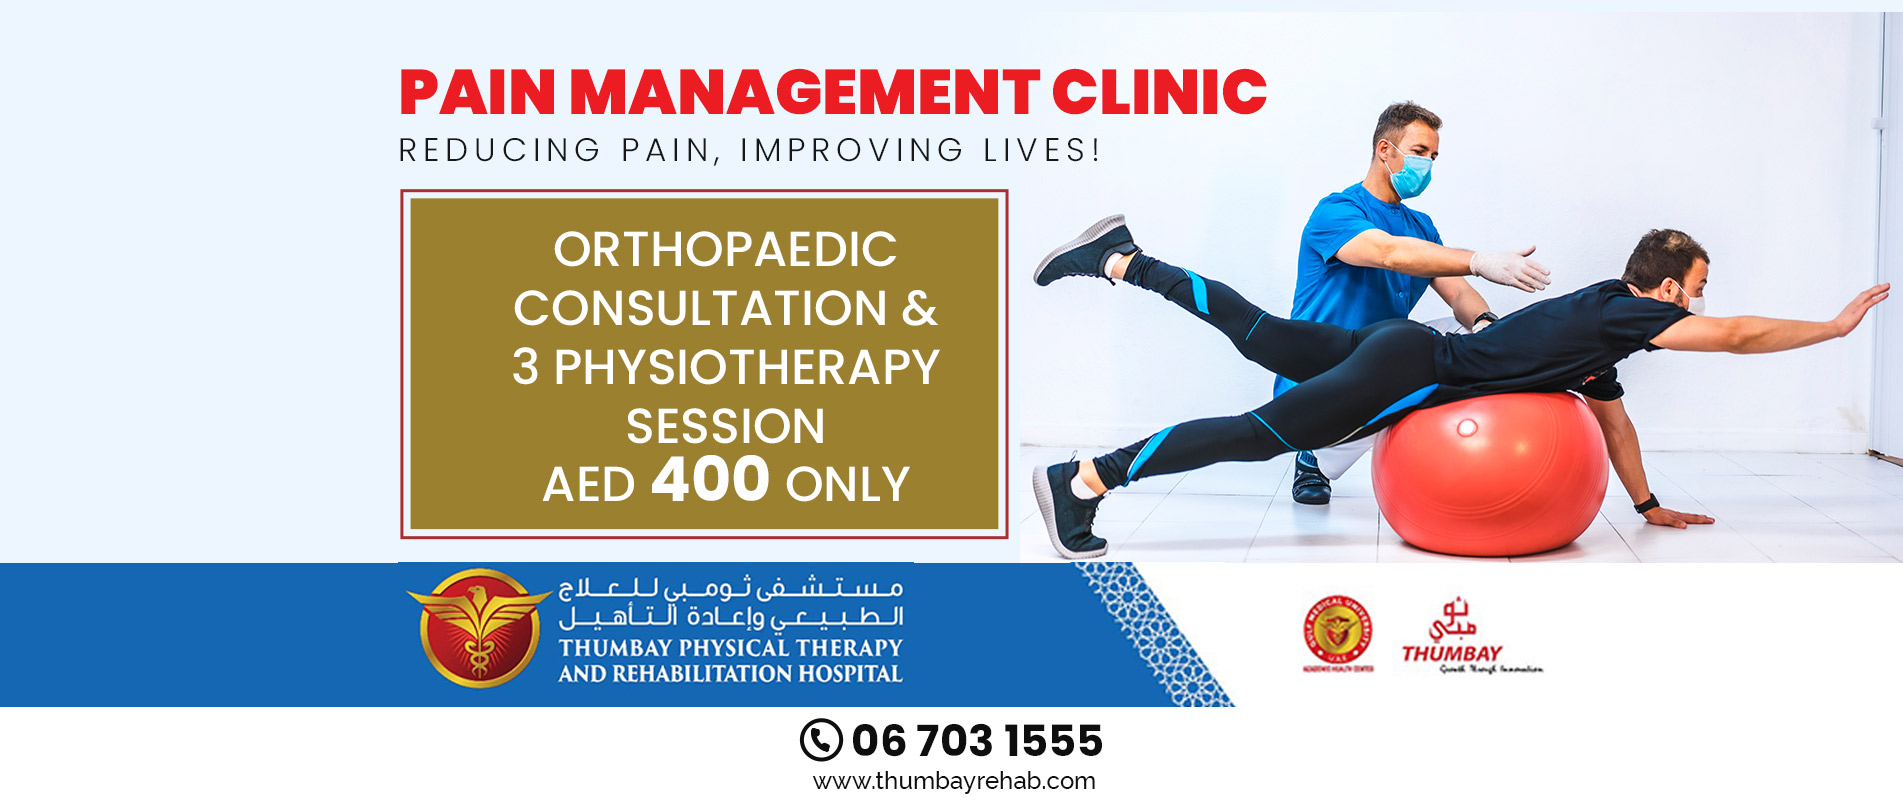 Pain-Management-Clinic